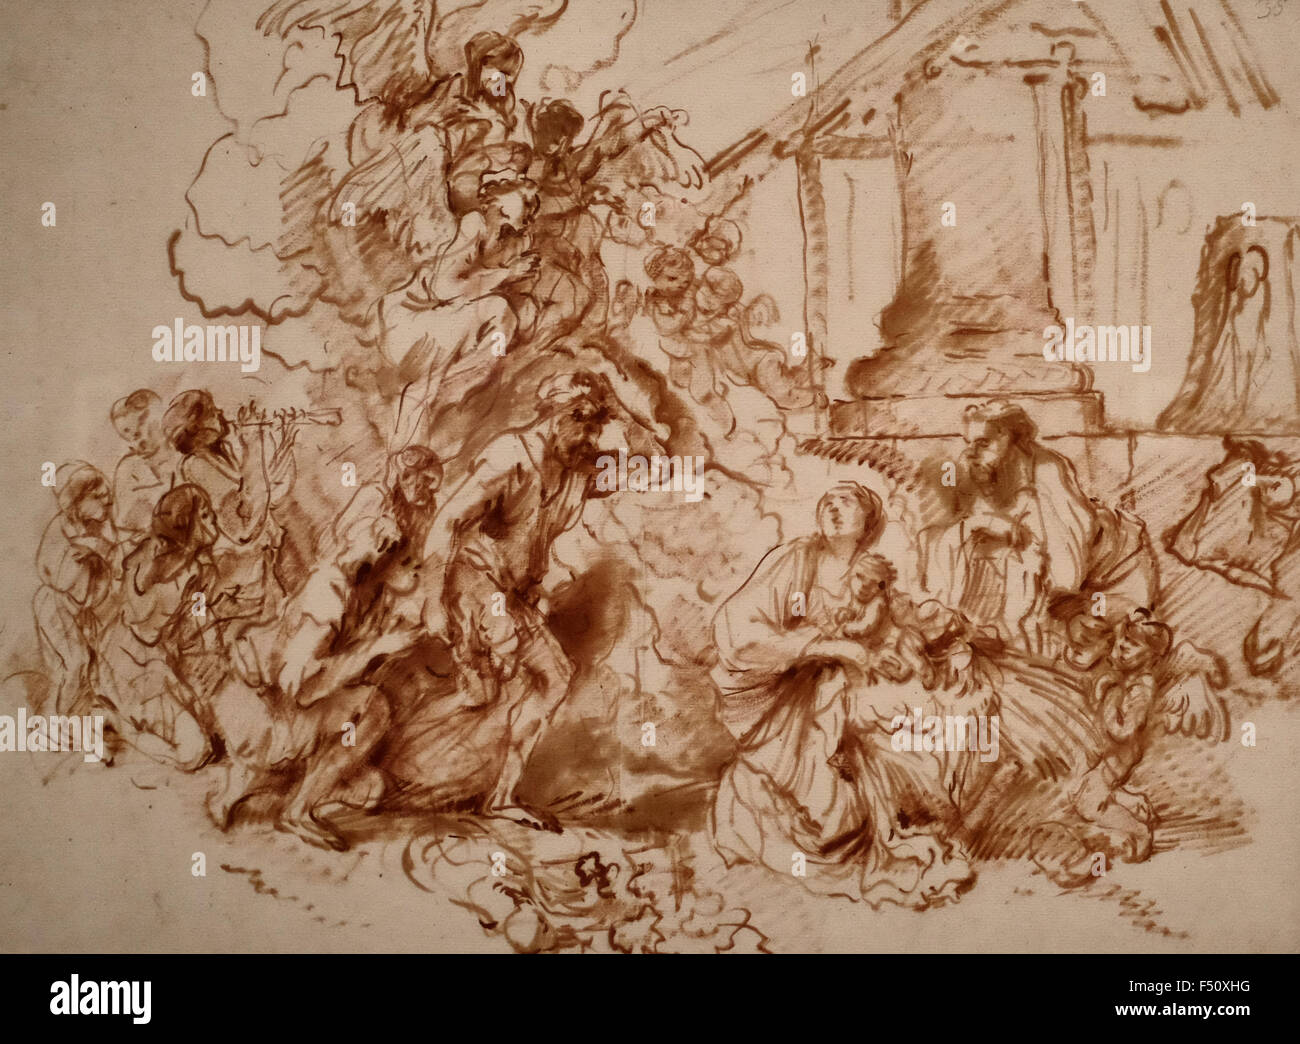 Giovanni Benedetto Castiglione - The Adoration of the Shepherds - 1640s Stock Photo